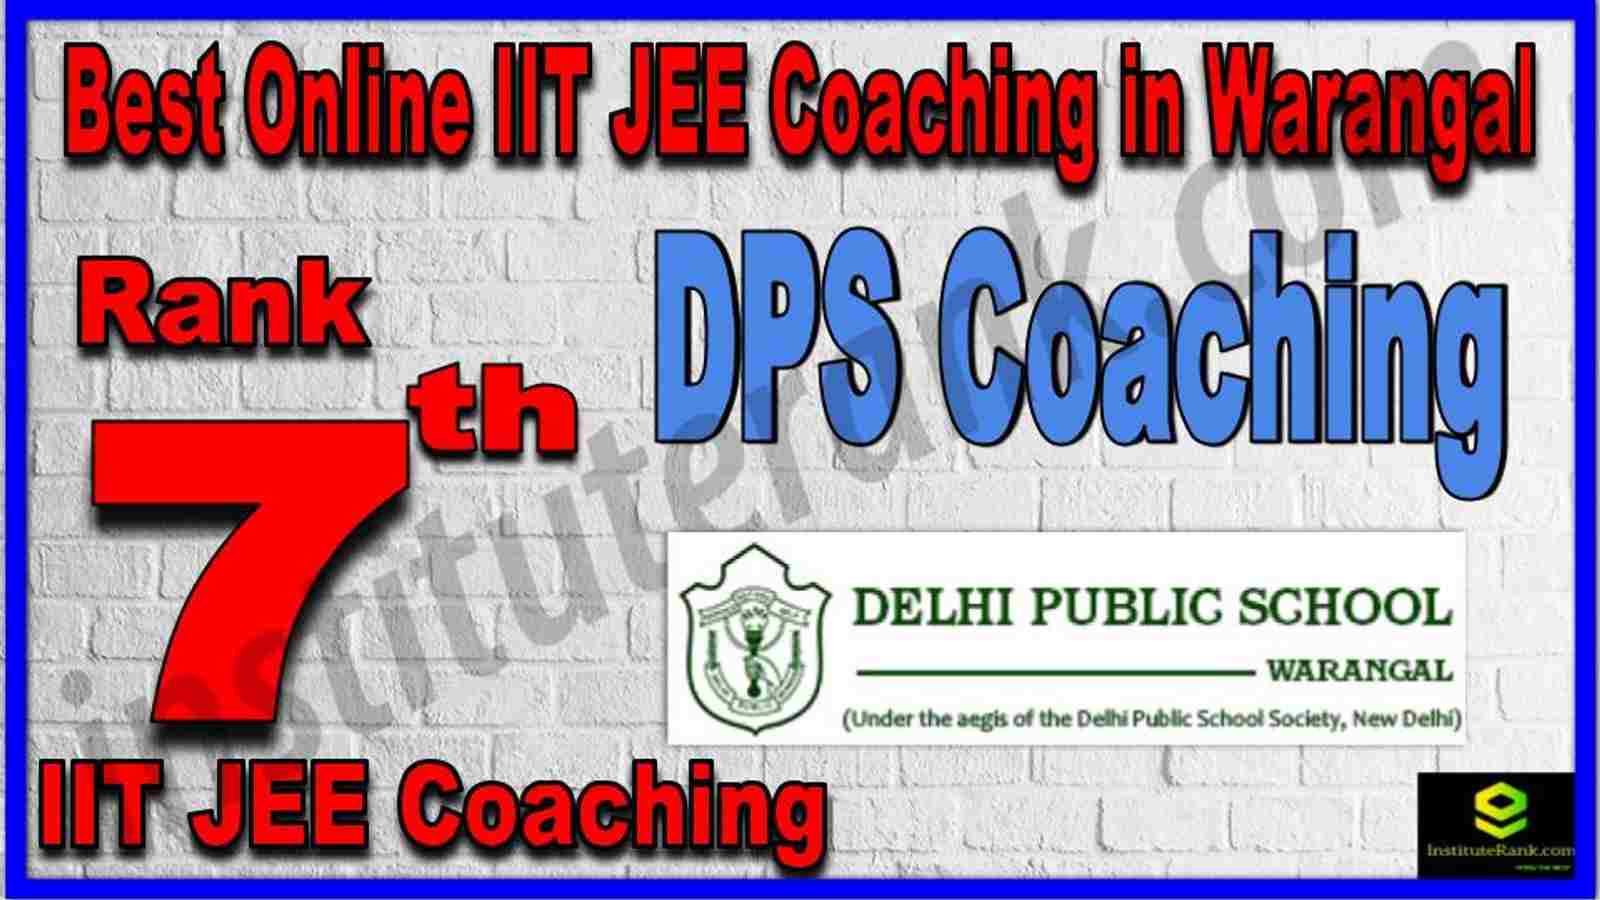 Rank 7th Best Online IIT JEE Coaching in Warangal